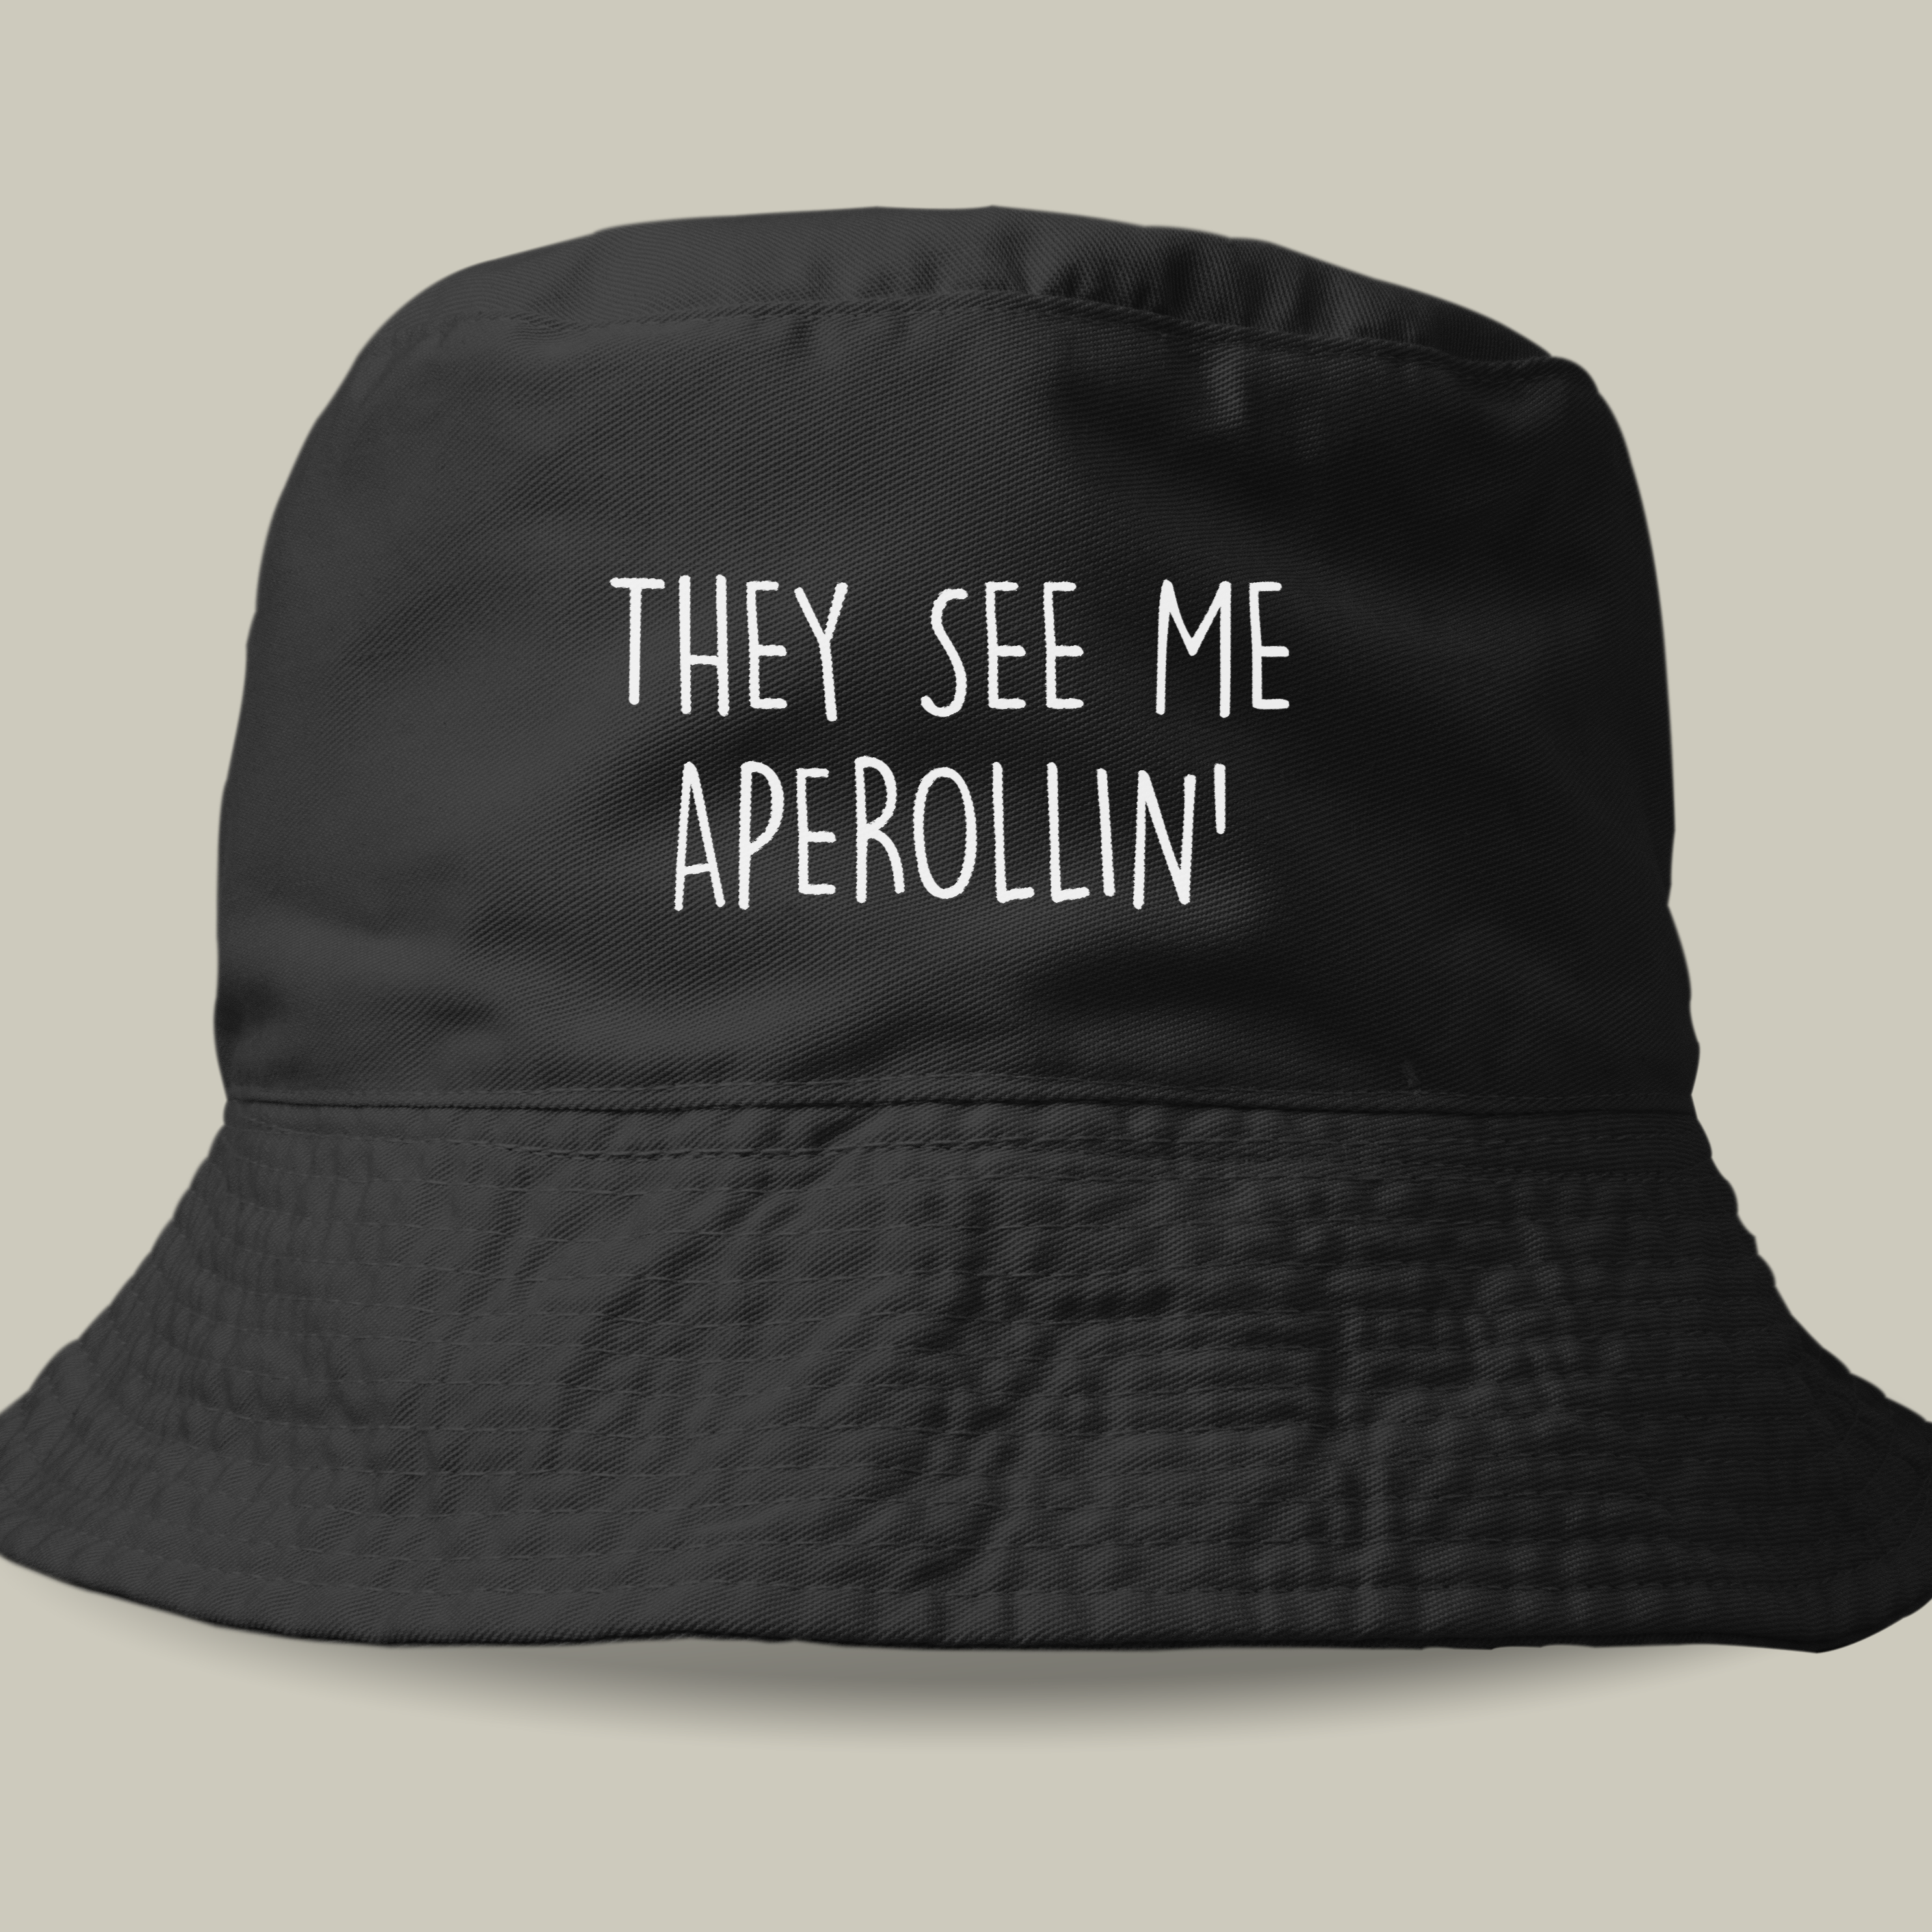 APEROLLIN - Cappello a secchiello